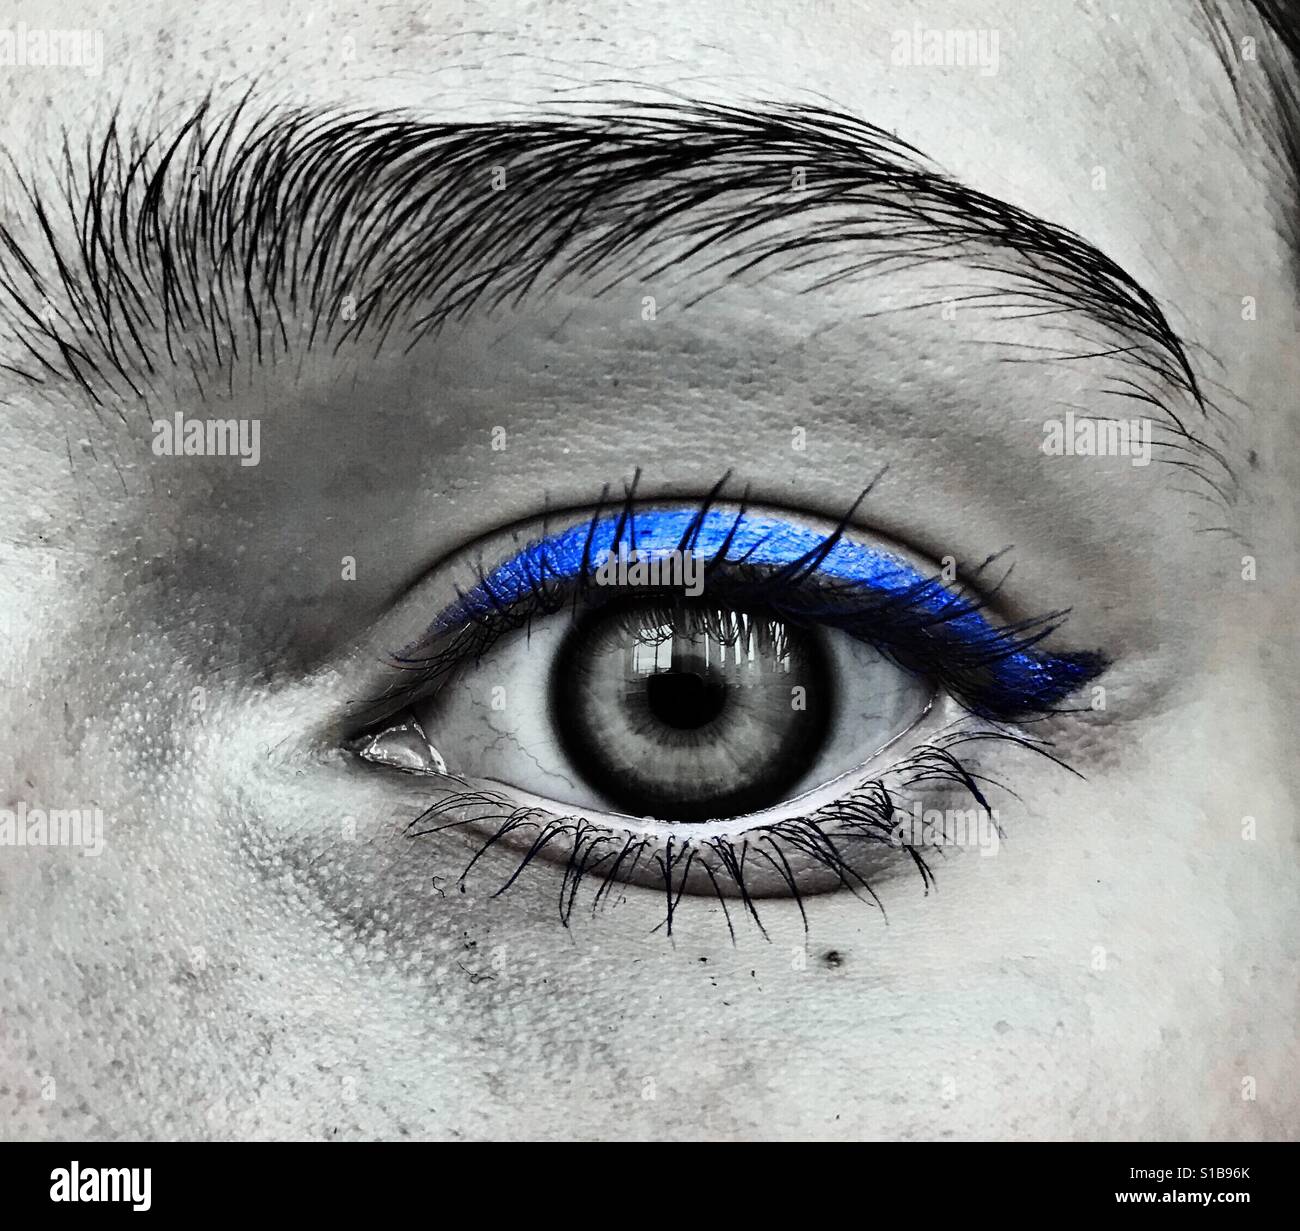 Un noir et blanc gros plan d'un oeil avec l'eyeliner bleu Banque D'Images